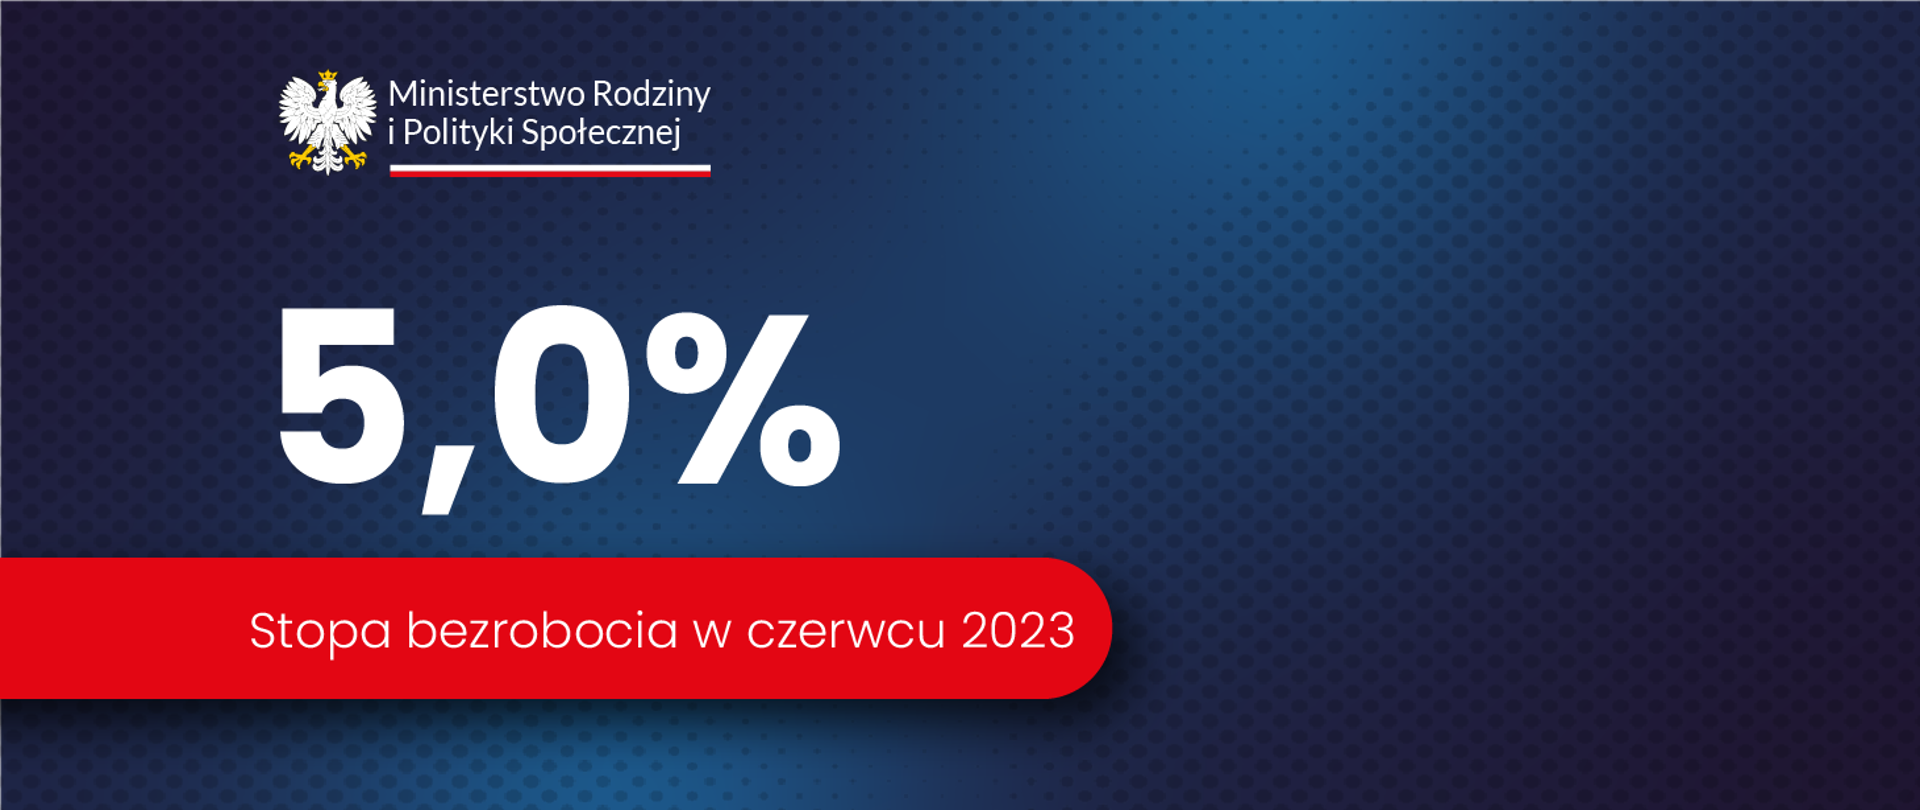 Grafika z granatowym tłem i logo Ministerstwa Rodziny i Polityki Społecznej oraz tekstem "5,0% stopa bezrobocia w czerwcu 2023"